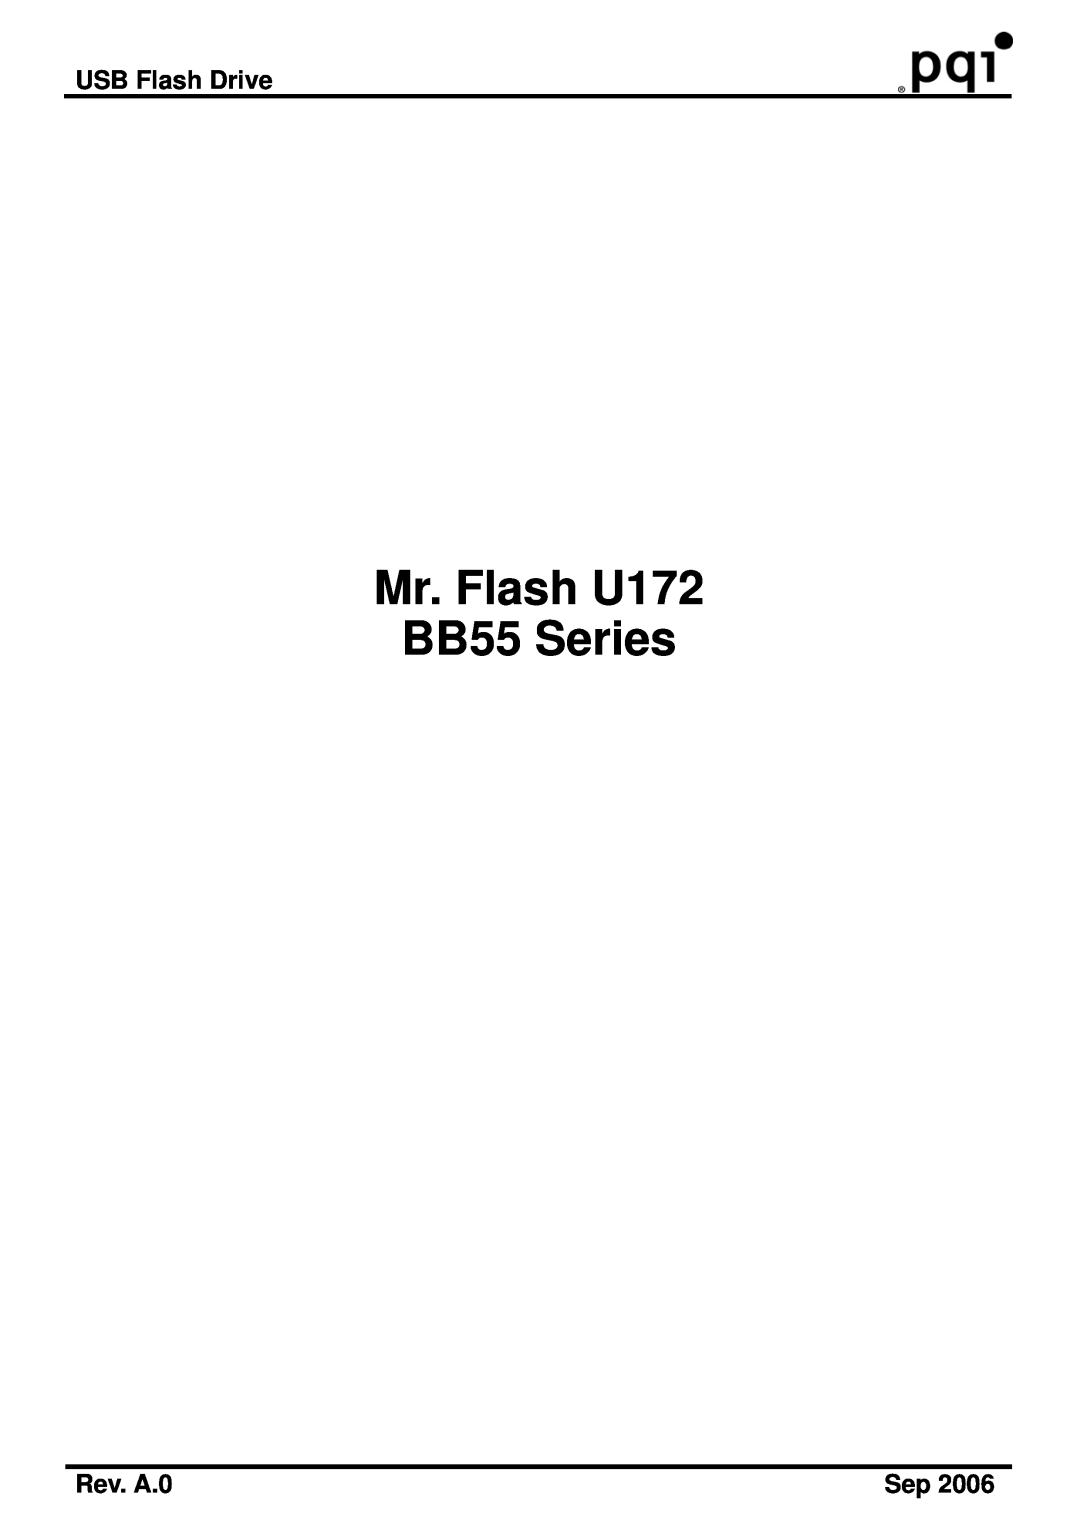 PQI manual USB Flash Drive, Rev. A.0, Mr. Flash U172 BB55 Series 